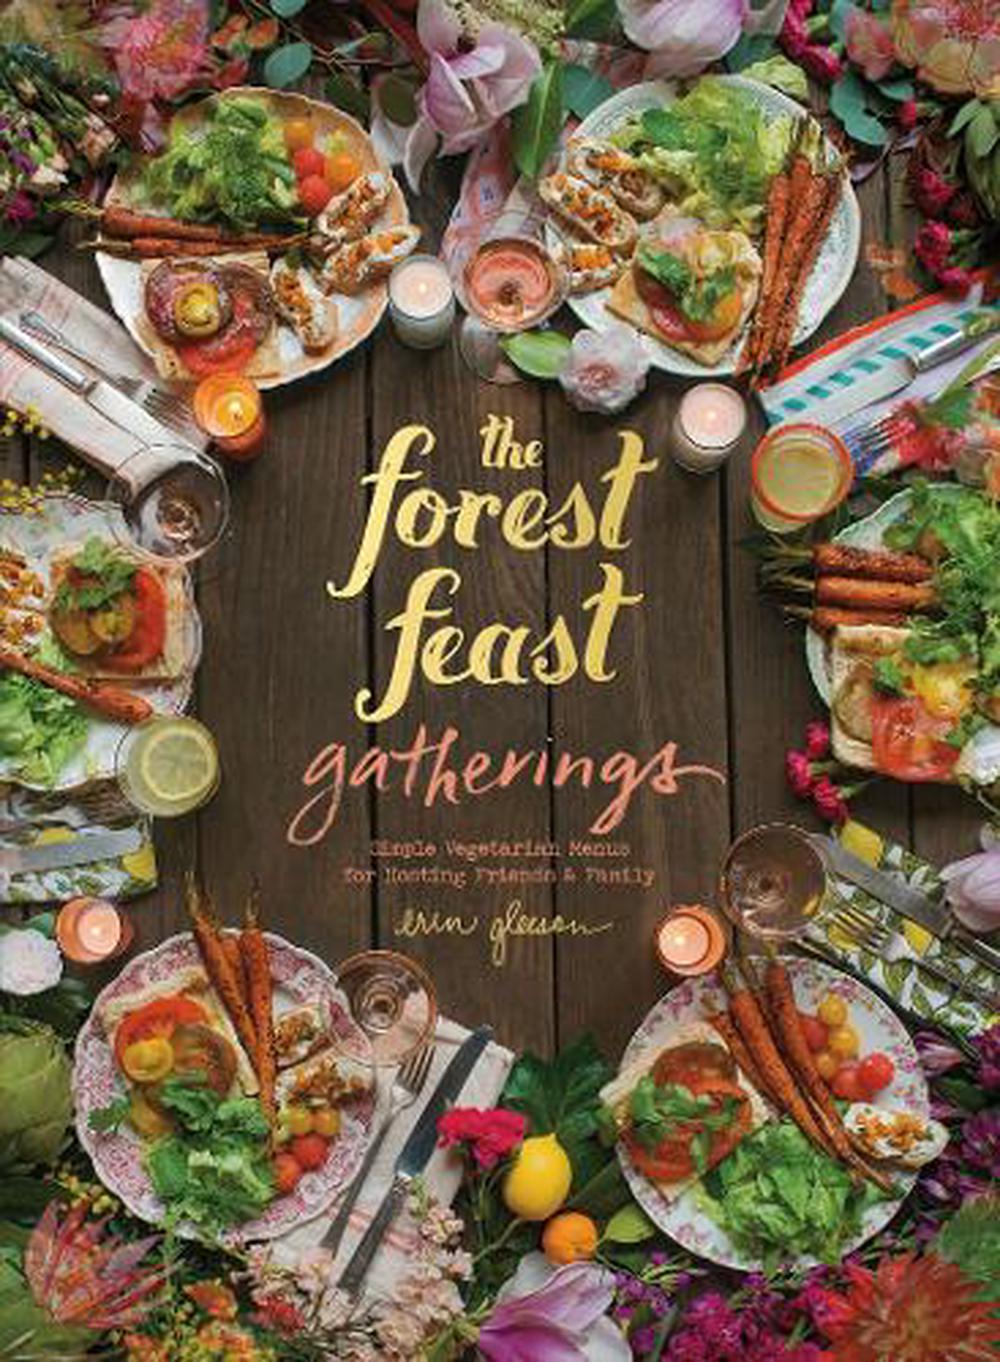 The Forest Feast Gatherings: Simple Vegetarian Menus